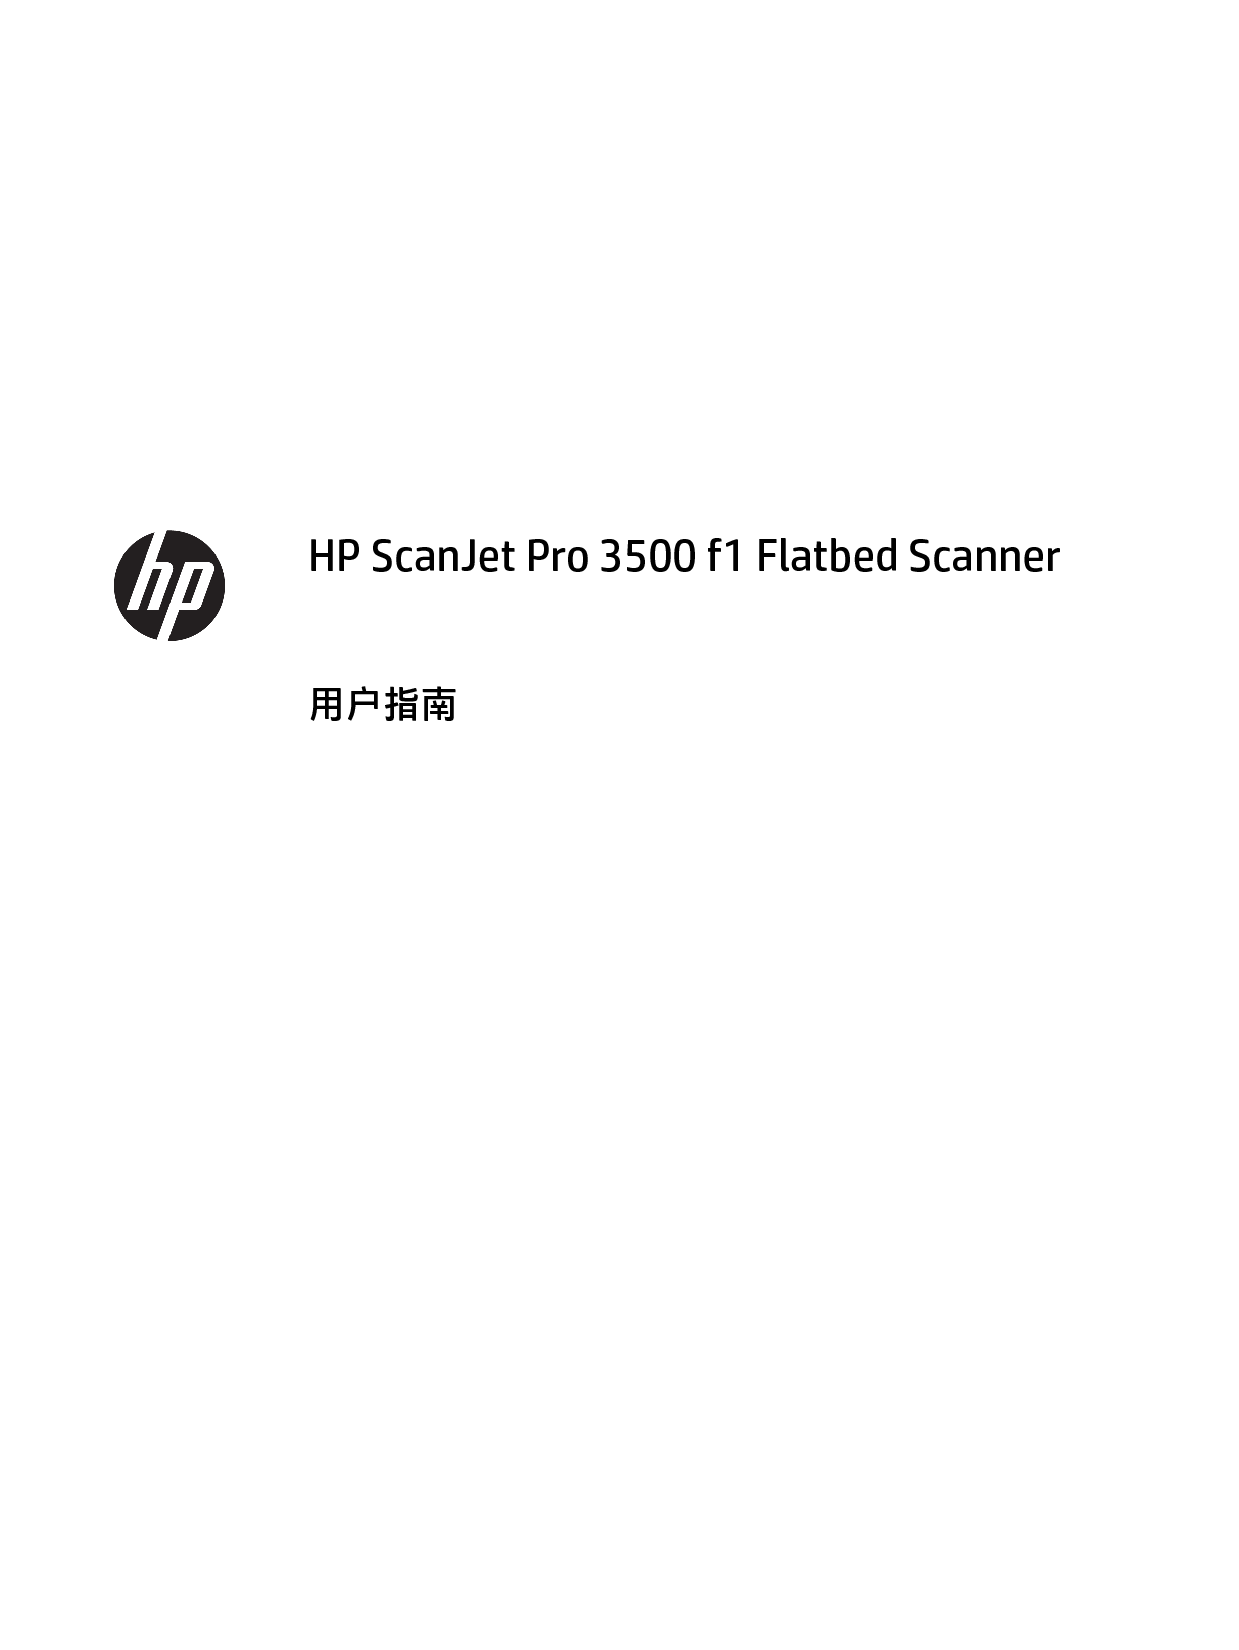 惠普 HP Scanjet Pro 3500 f1 用户指南 第2页